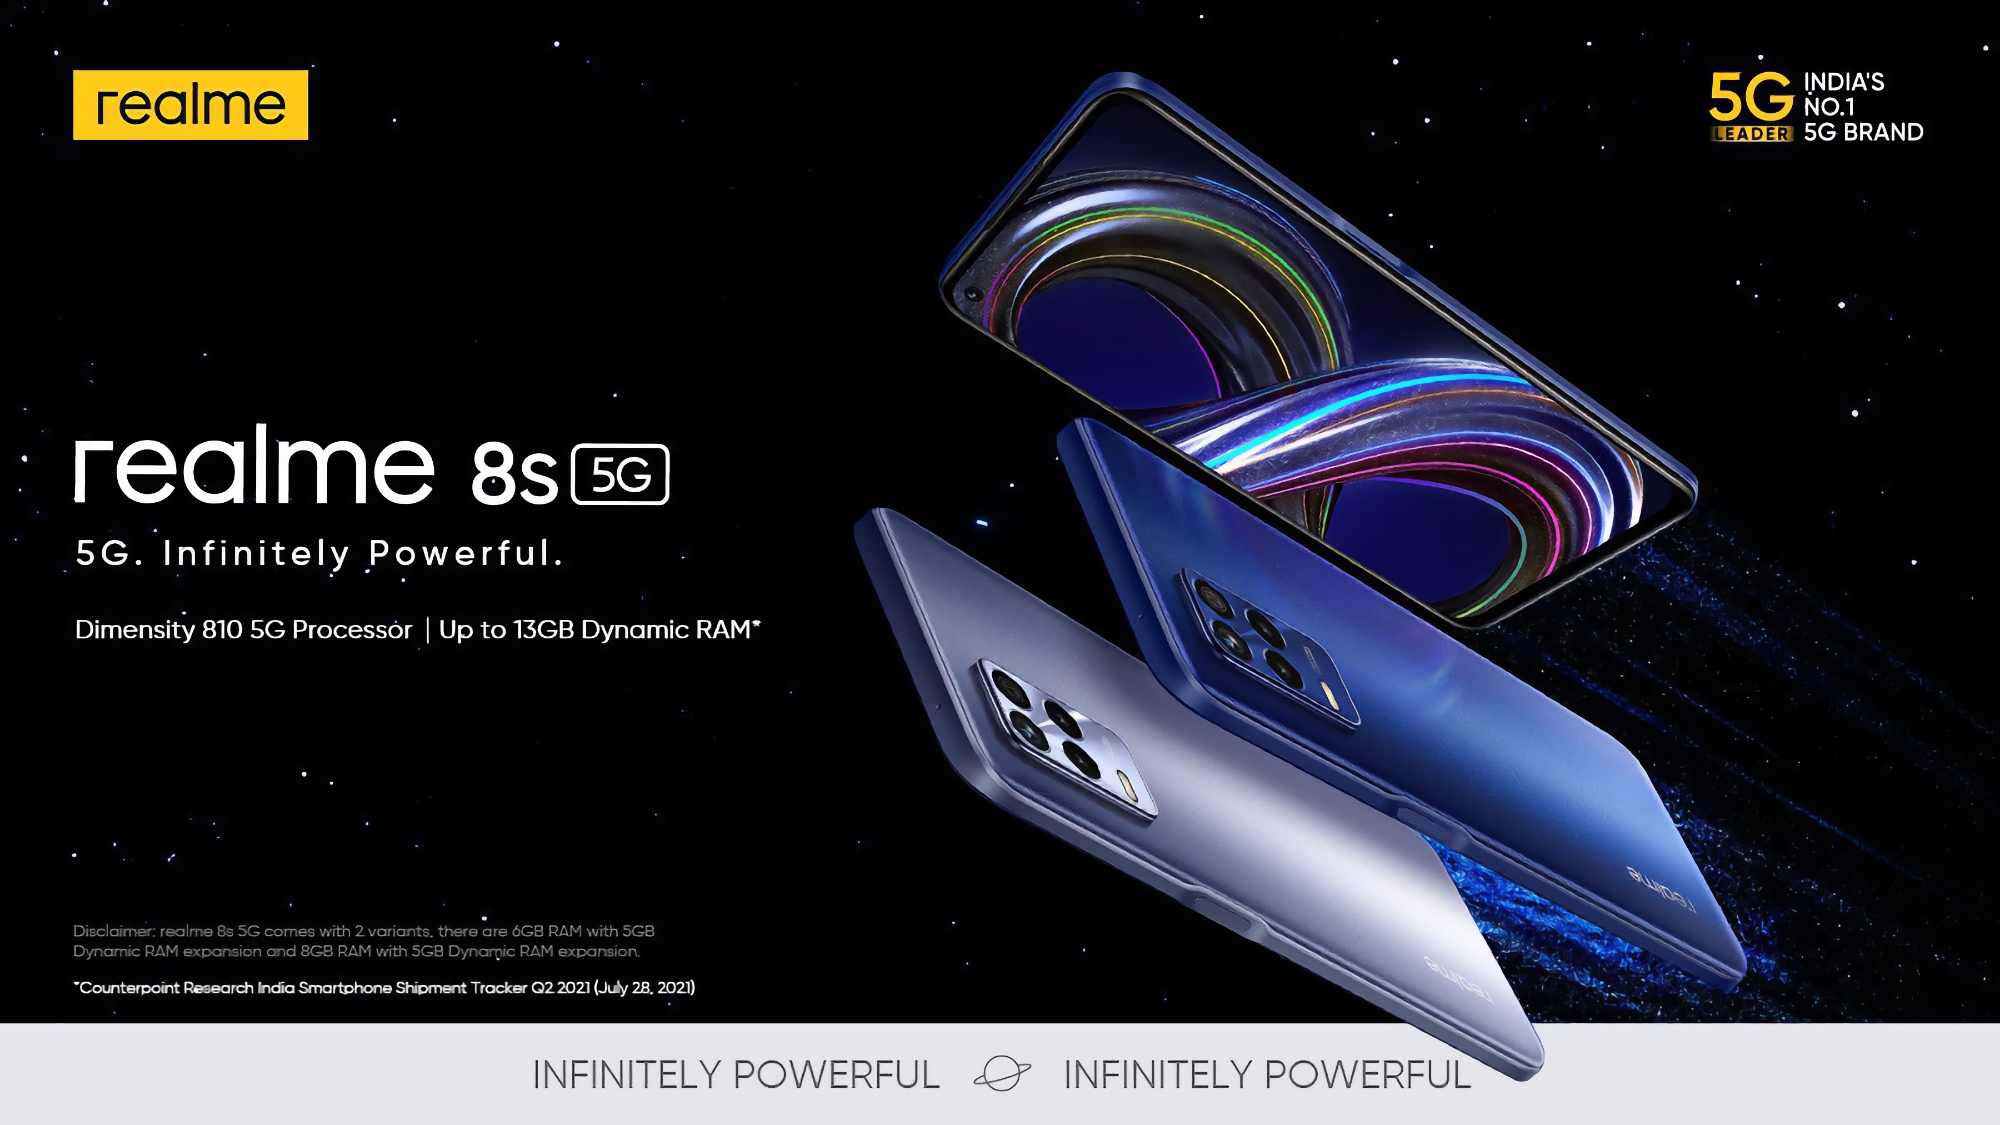 Realme 8s 5G: Das erste Smartphone der Welt mit einem MediaTek Dimensity 810 Prozessor an Bord